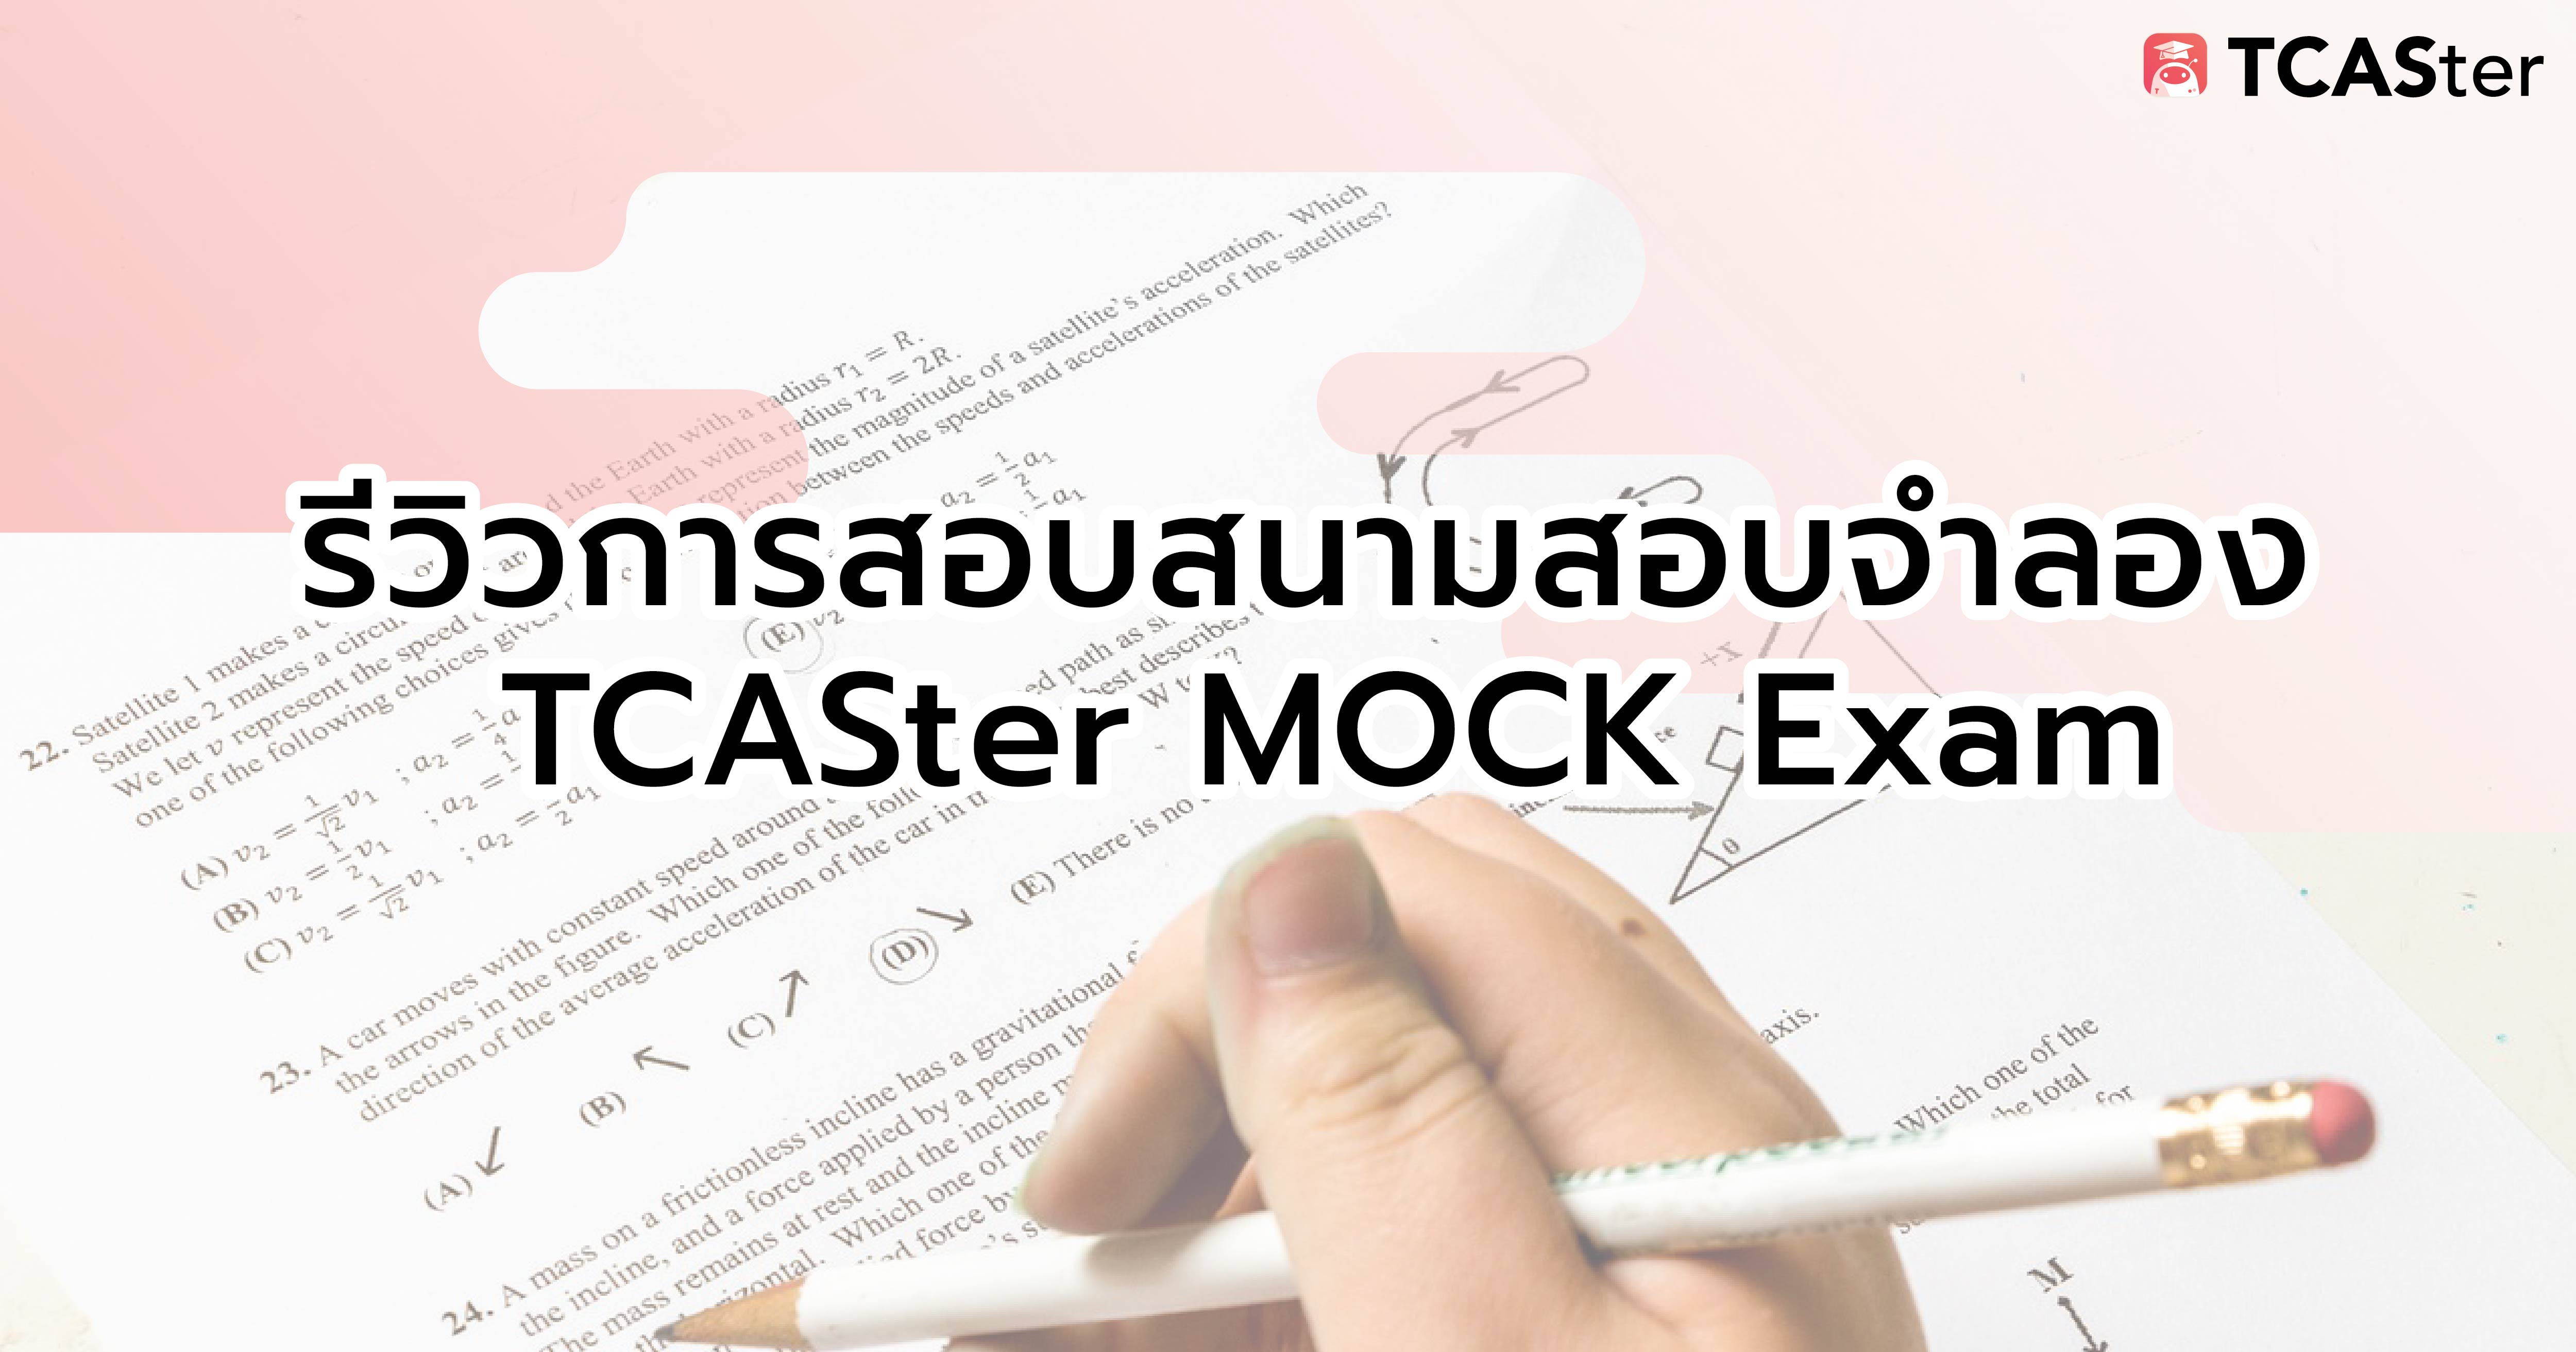  รีวิวการสอบสนามสอบจำลอง TCASter MOCK Exam